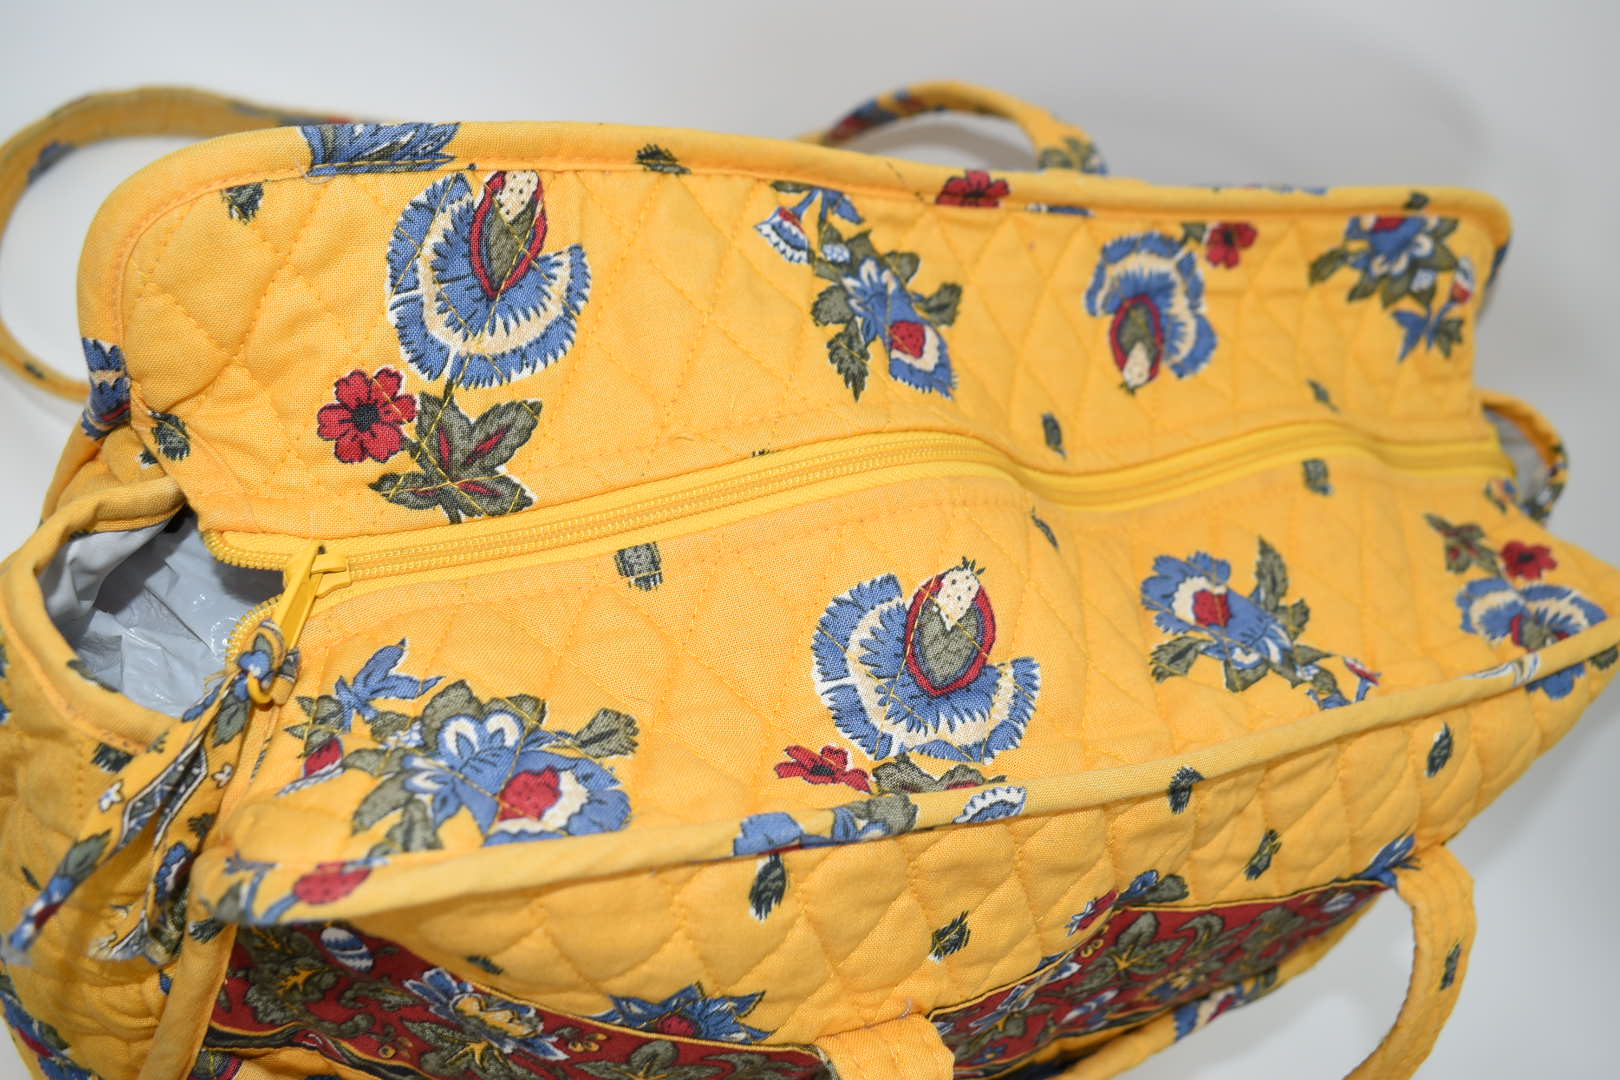 Vera Bradley Uptown Baby Diaper Tote Bag in Exotic Floral Grid